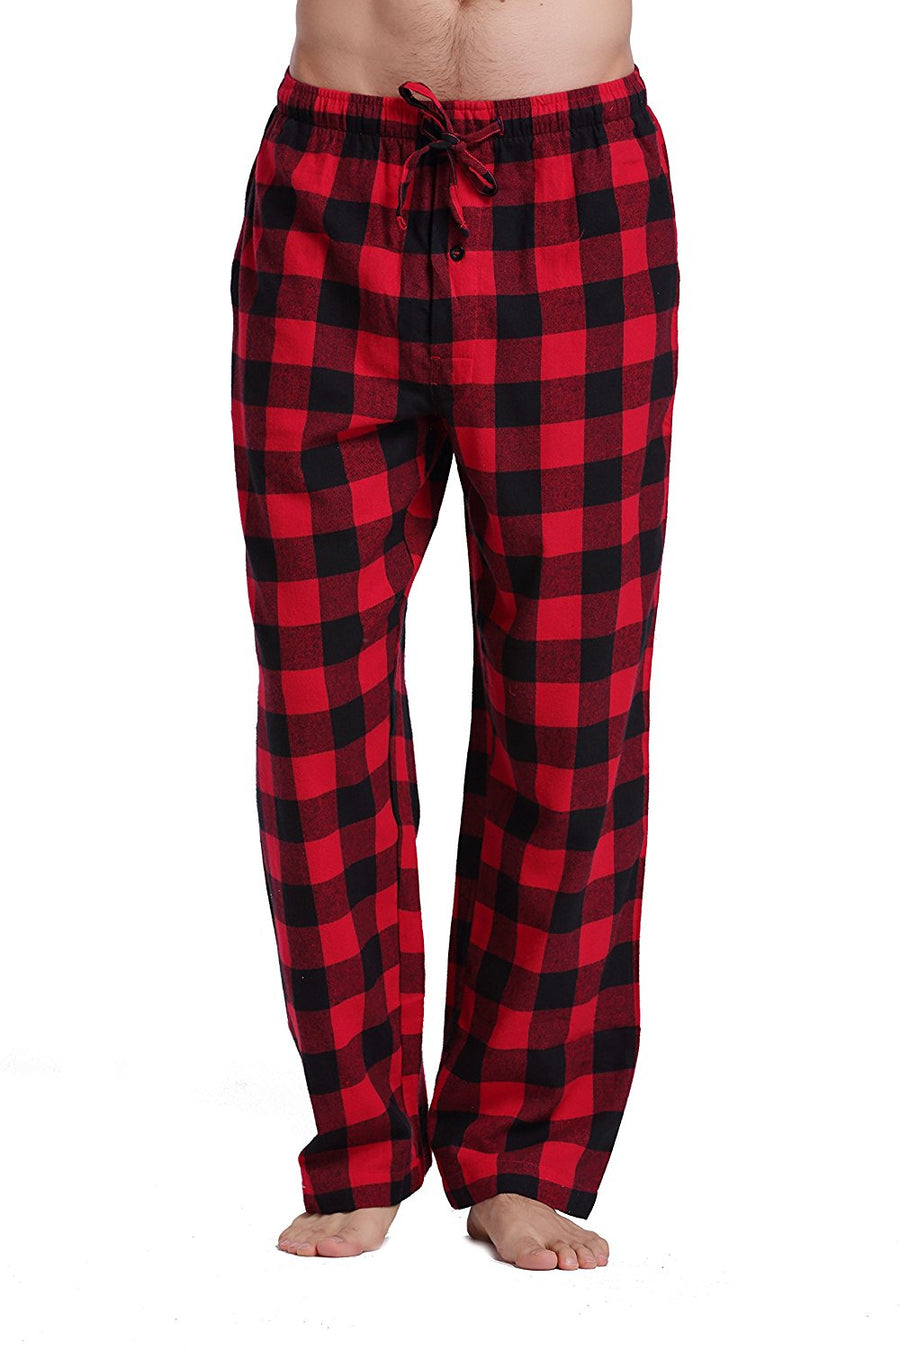 CYZ Men's 100% Cotton Super Soft Flannel Plaid Pajama Pants – CYZ